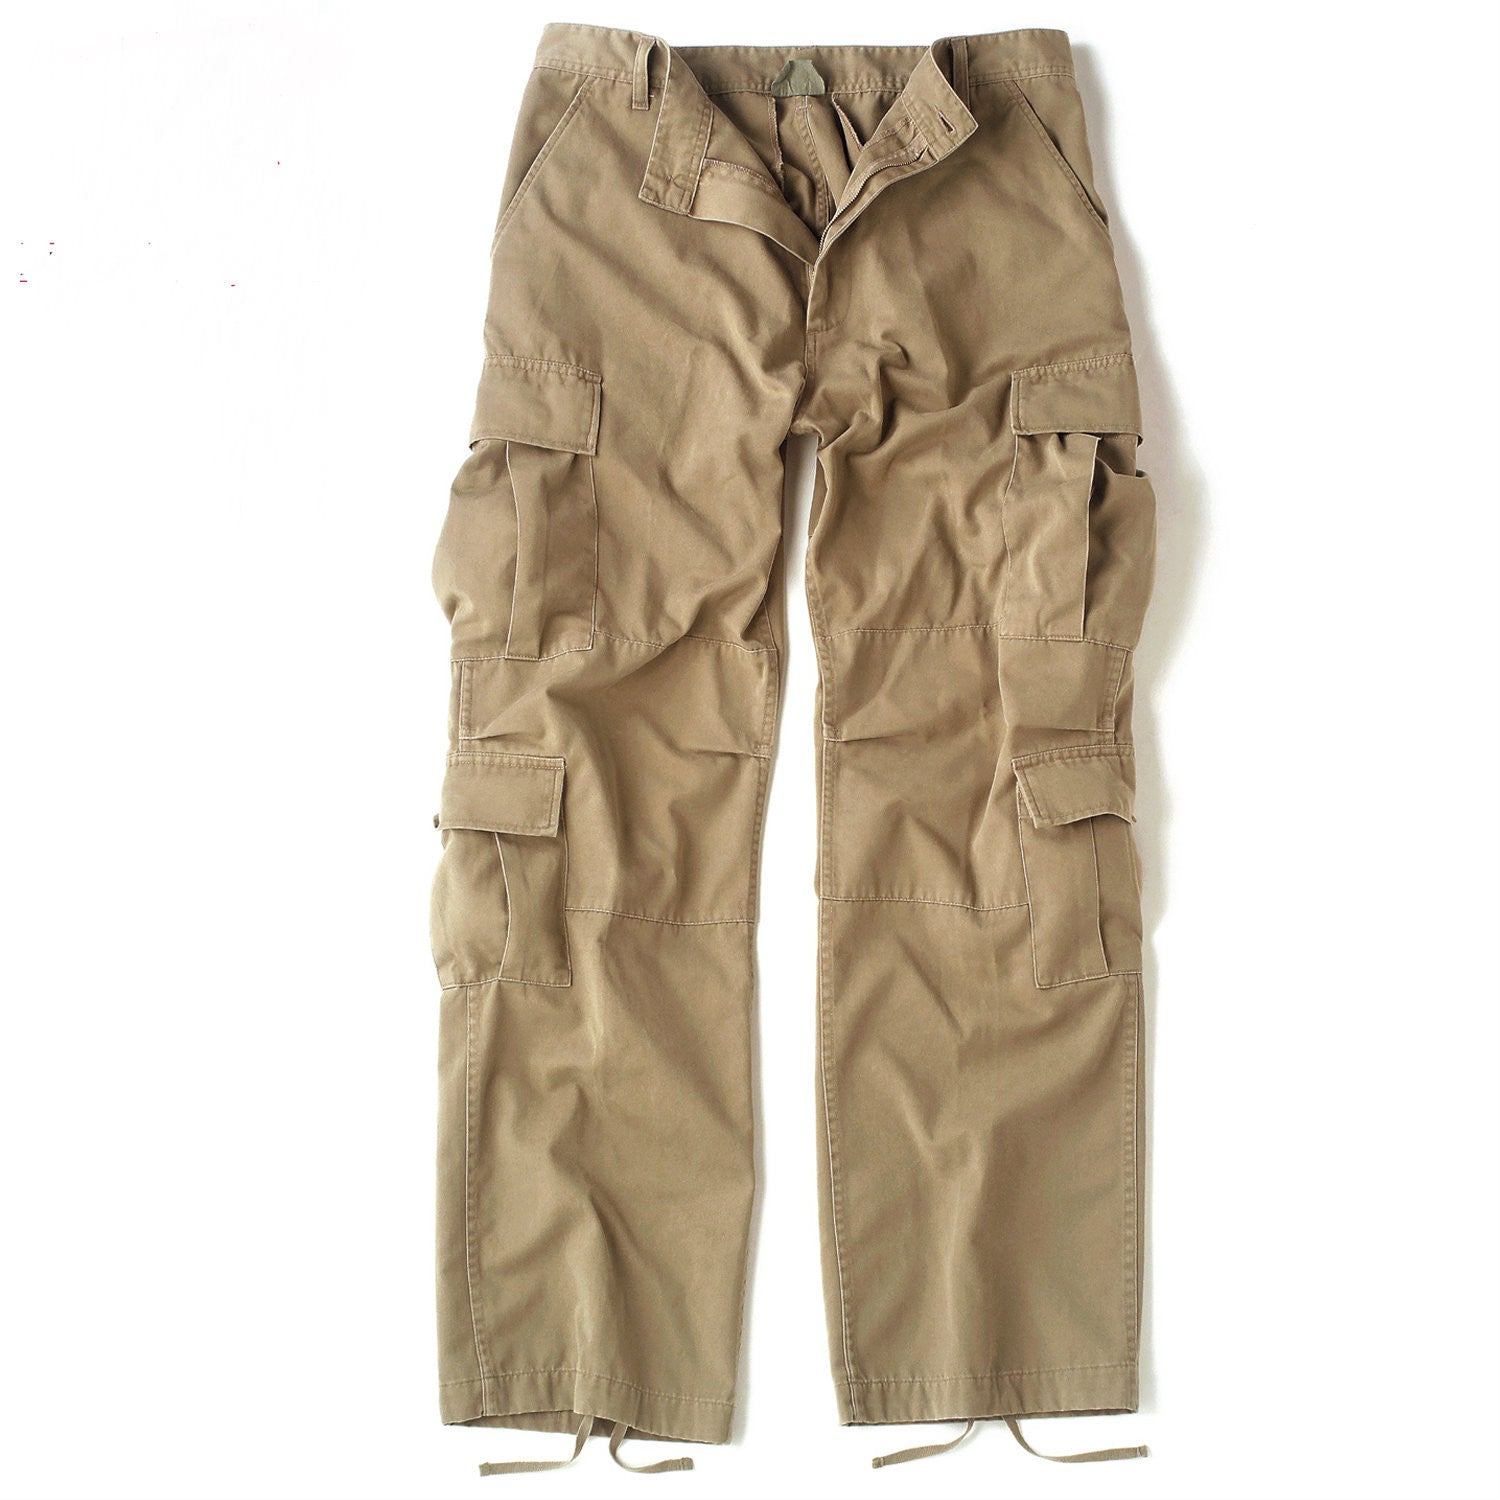 Vintage Paratrooper Fatigue Pants Khaki